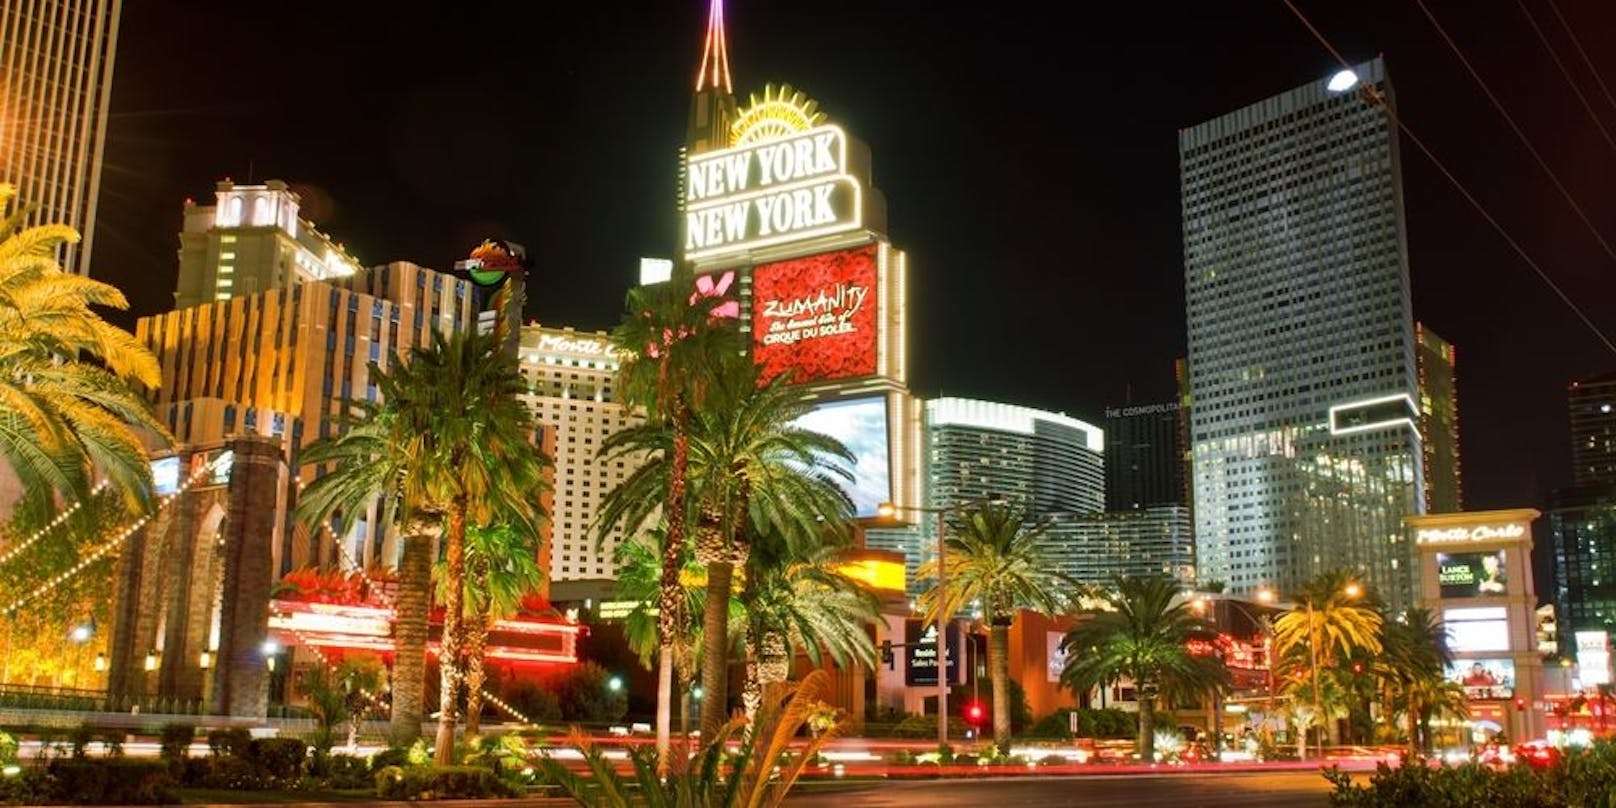 Ein Polizist der Glücksspielmetropole Las Vegas wurde vergangene Woche wegen mehrerer Überfälle auf Casinos festgenommen.